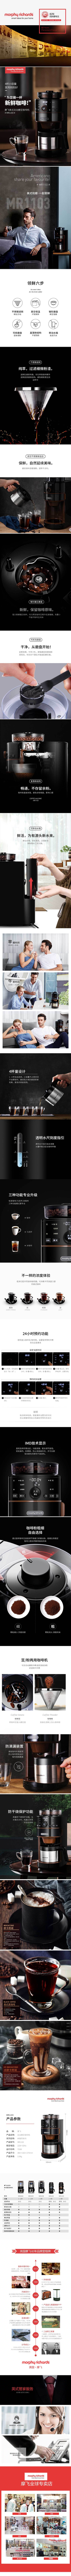 摩飞家用美式磨豆咖啡机MR1103详情页.jpg